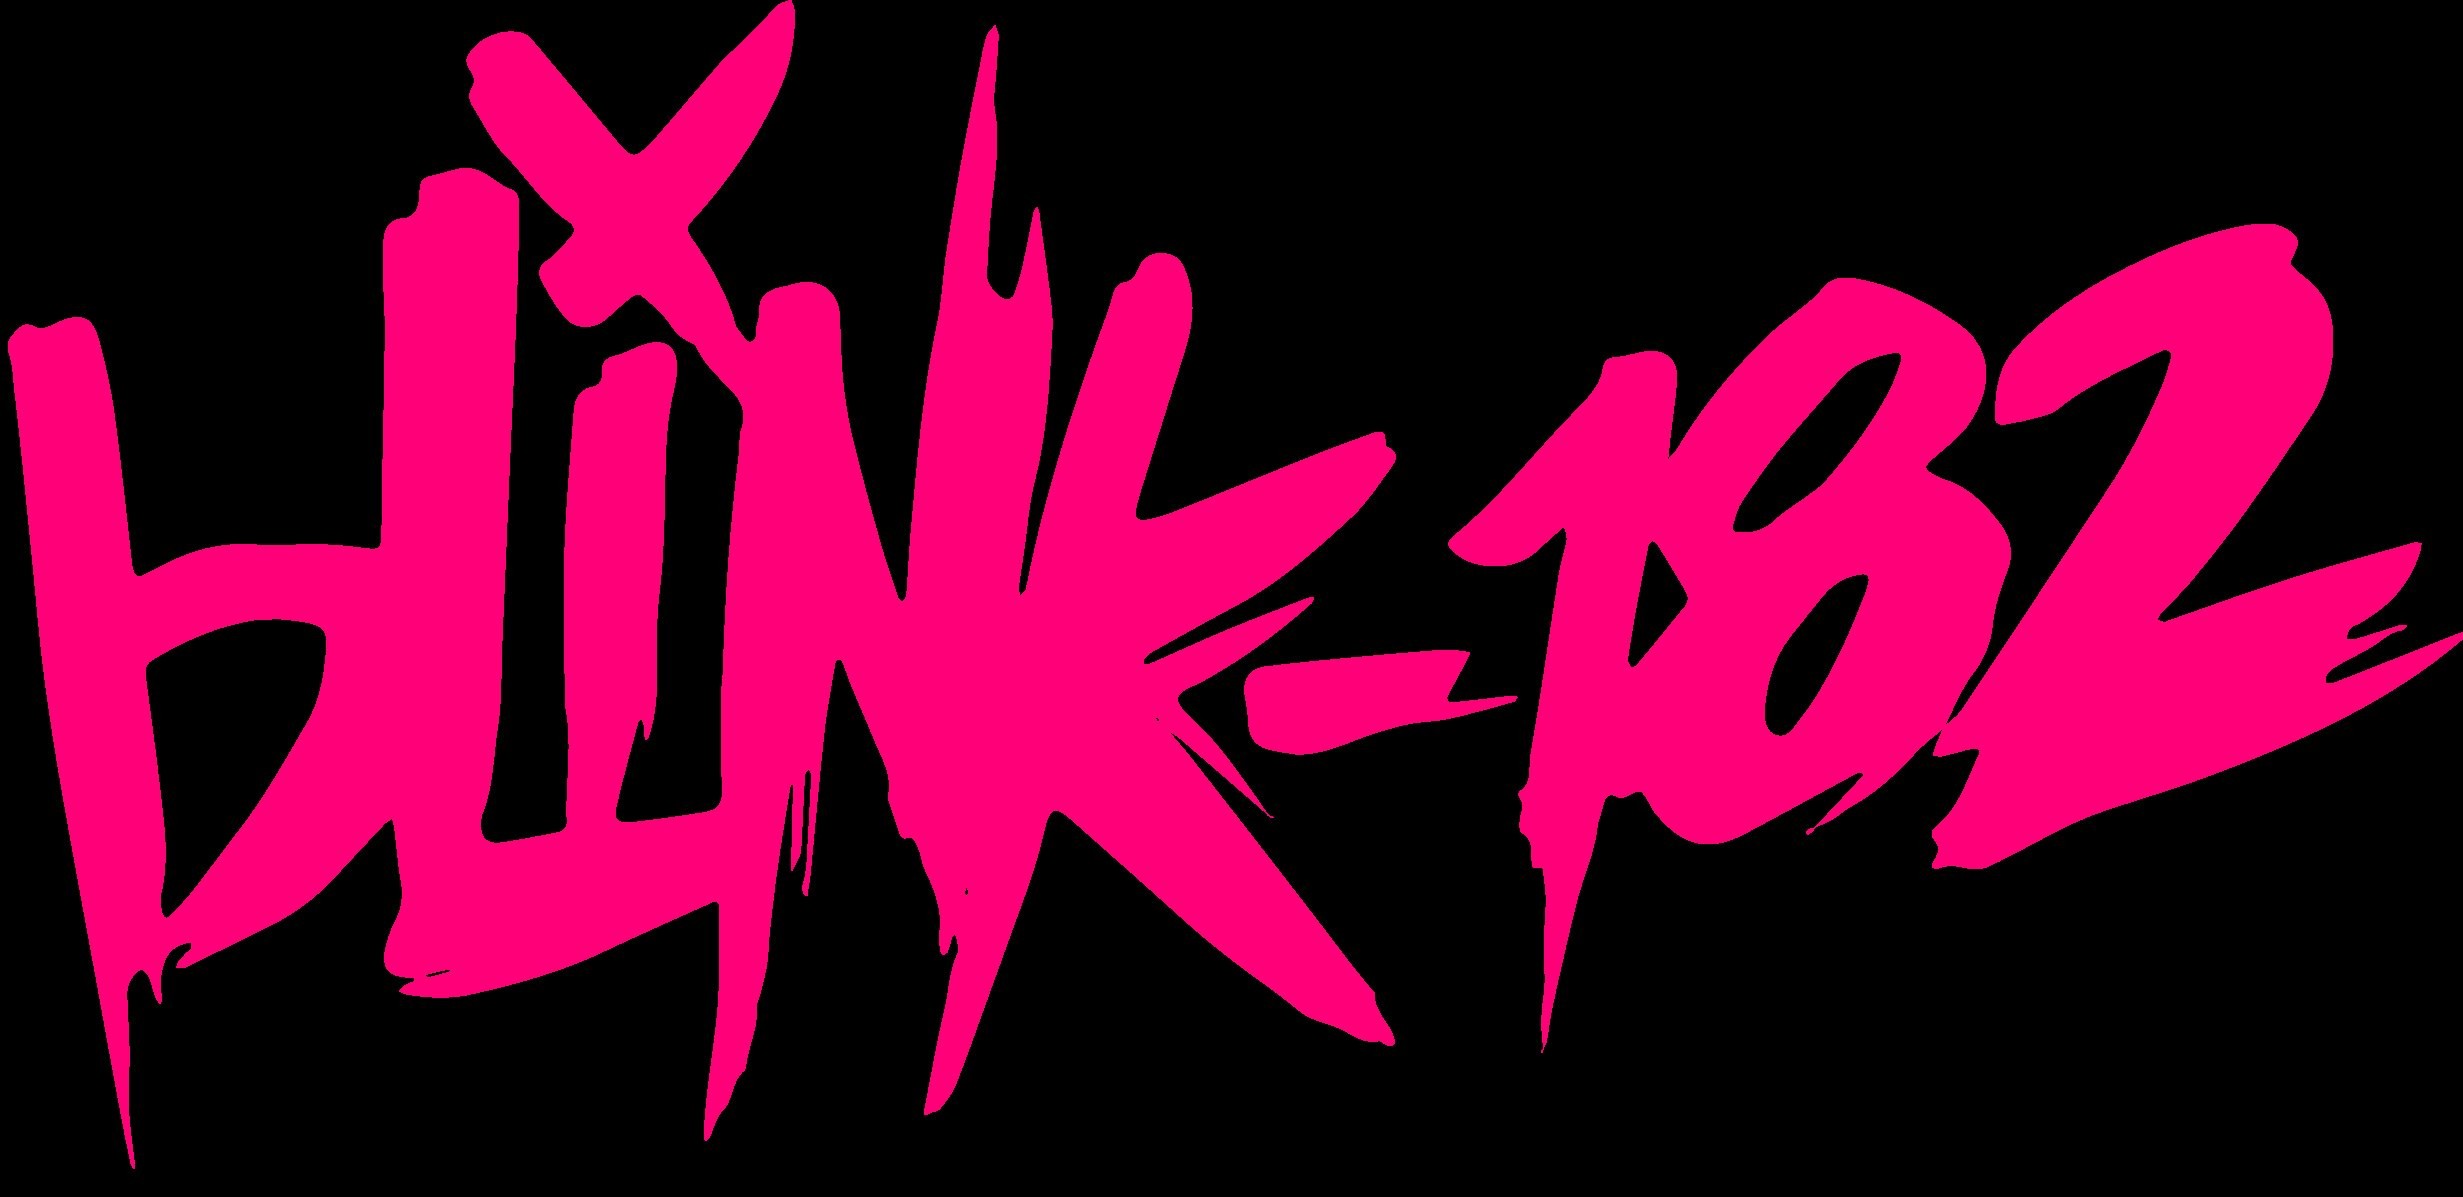 2463x1197 BLINK-182 pop punk alternative rock hard blink 182 wallpaper |  |  549209 | WallpaperUP